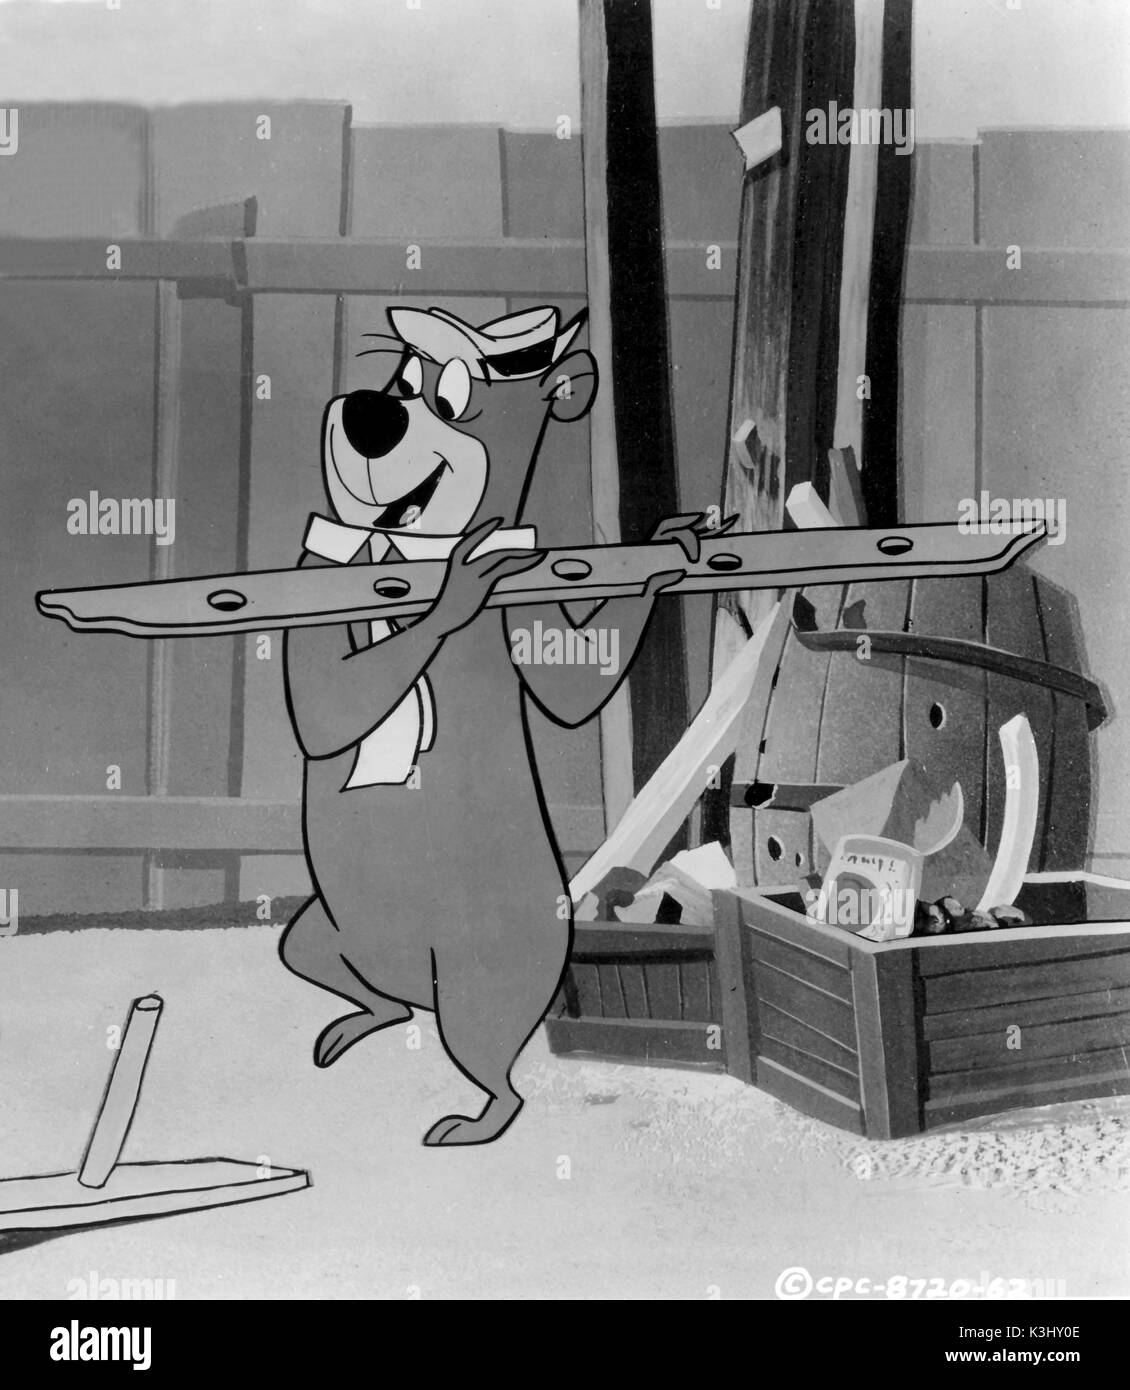 Yogi bear cartoon hi-res stock photography and images - Alamy